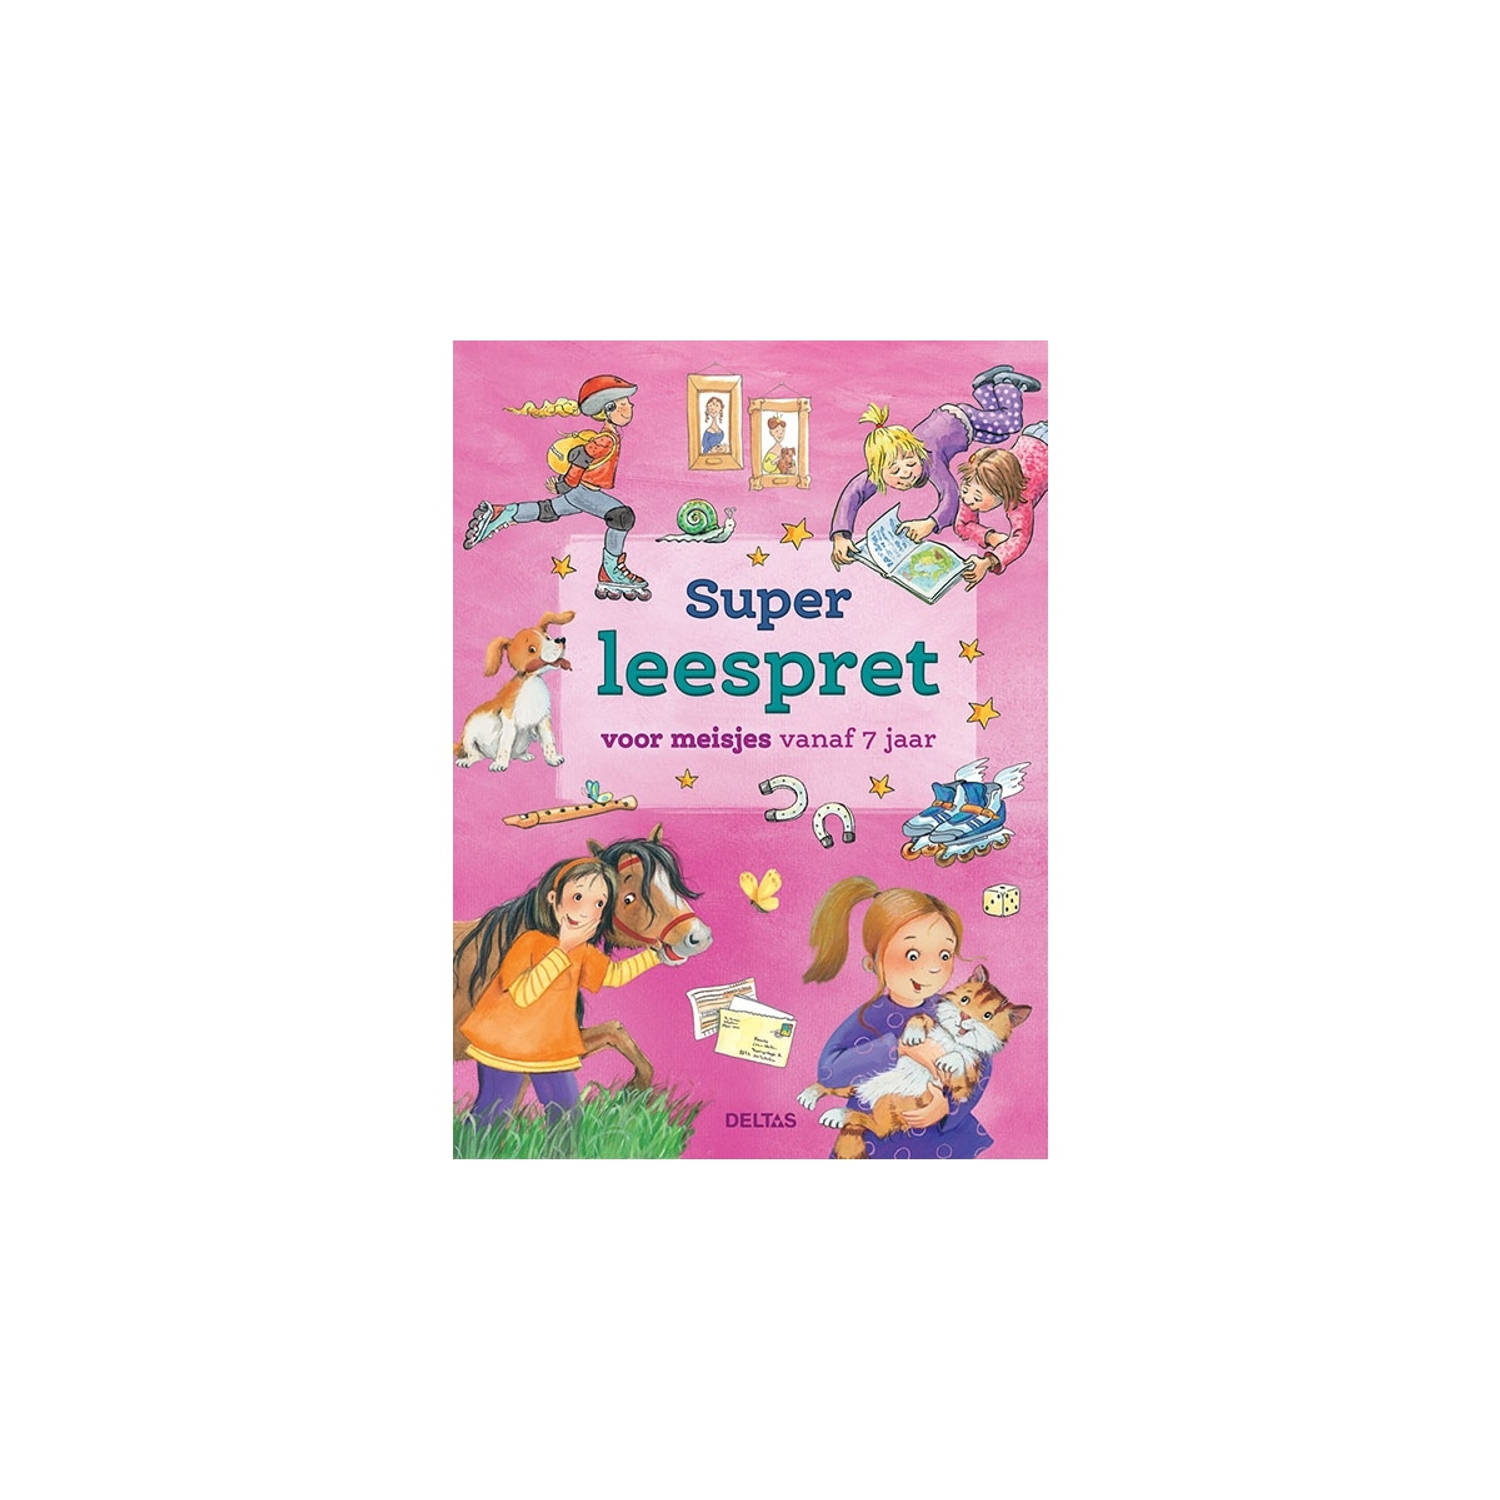 Super leespret voor meisjes vanaf 7 jaar. Hardcover